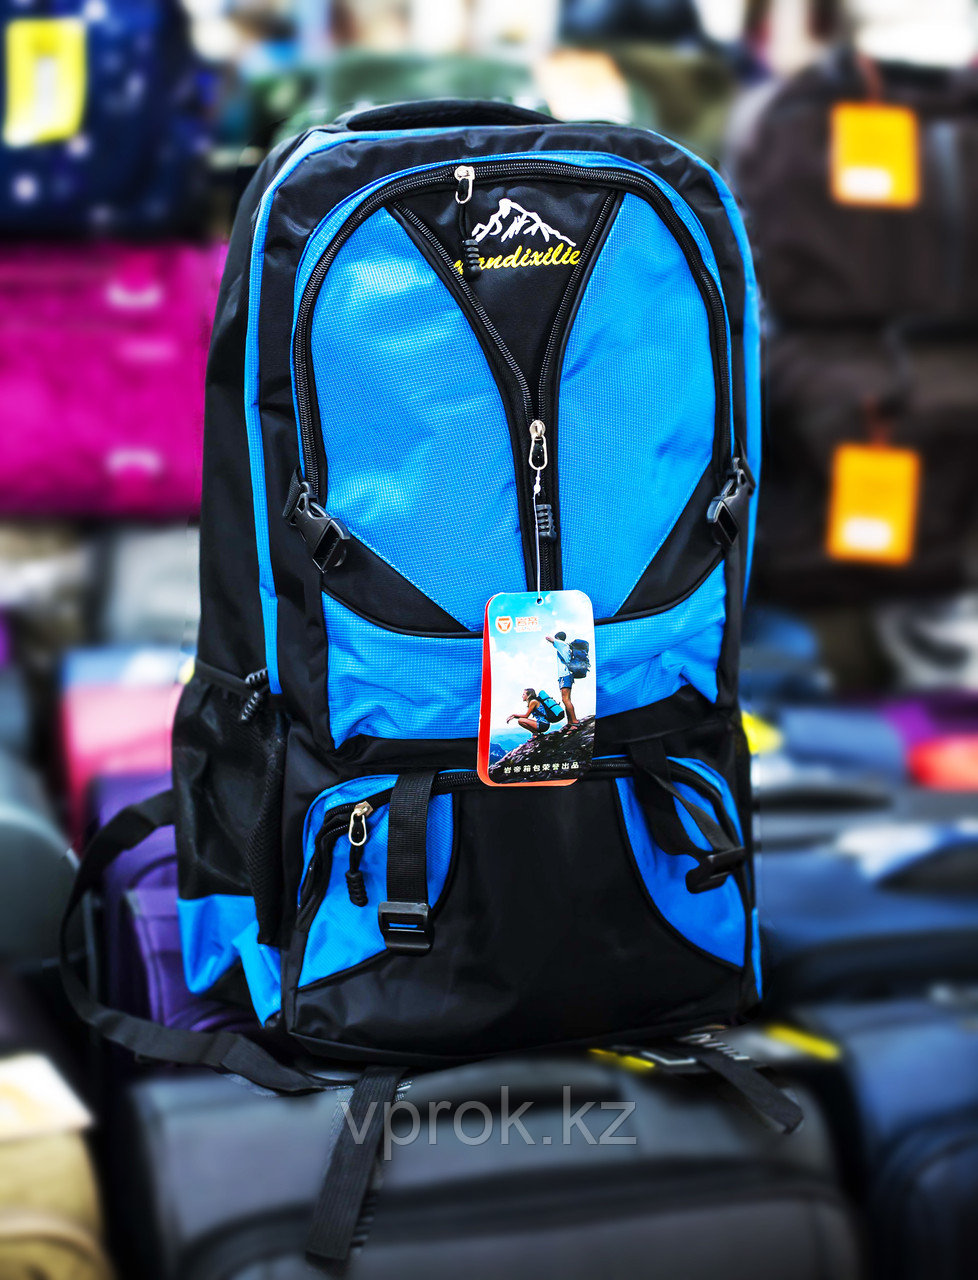 Туристический рюкзак "YANDIXILIE", (синий, с голубыми вставками)